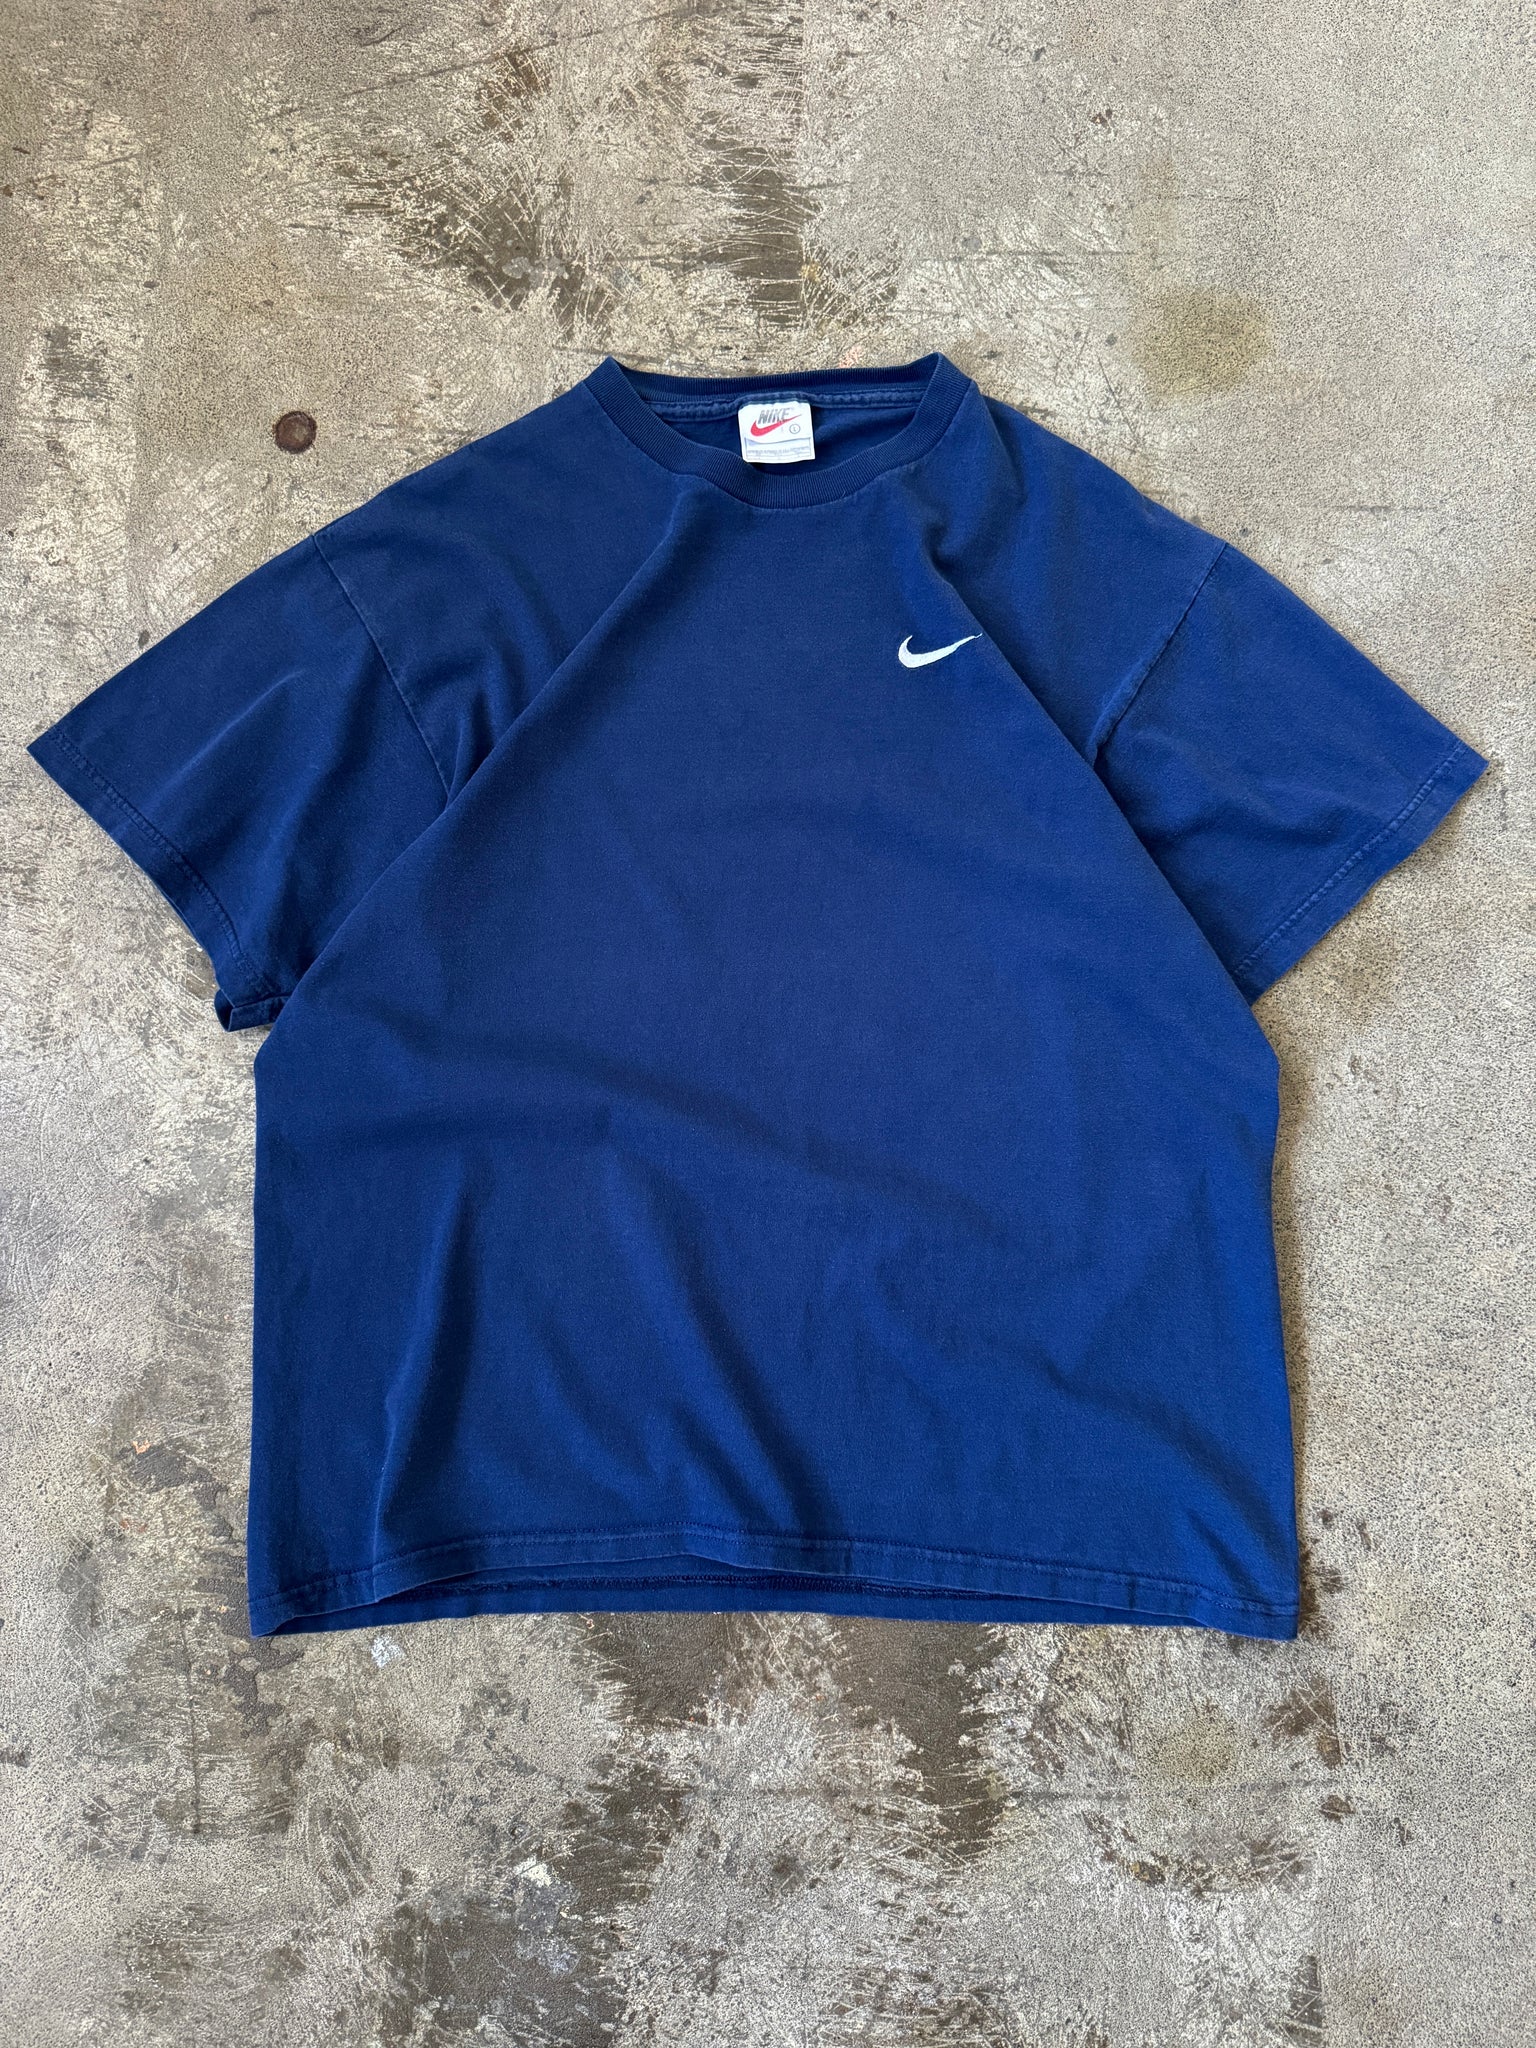 Vintage Nike Swoosh T'Shirt (L)